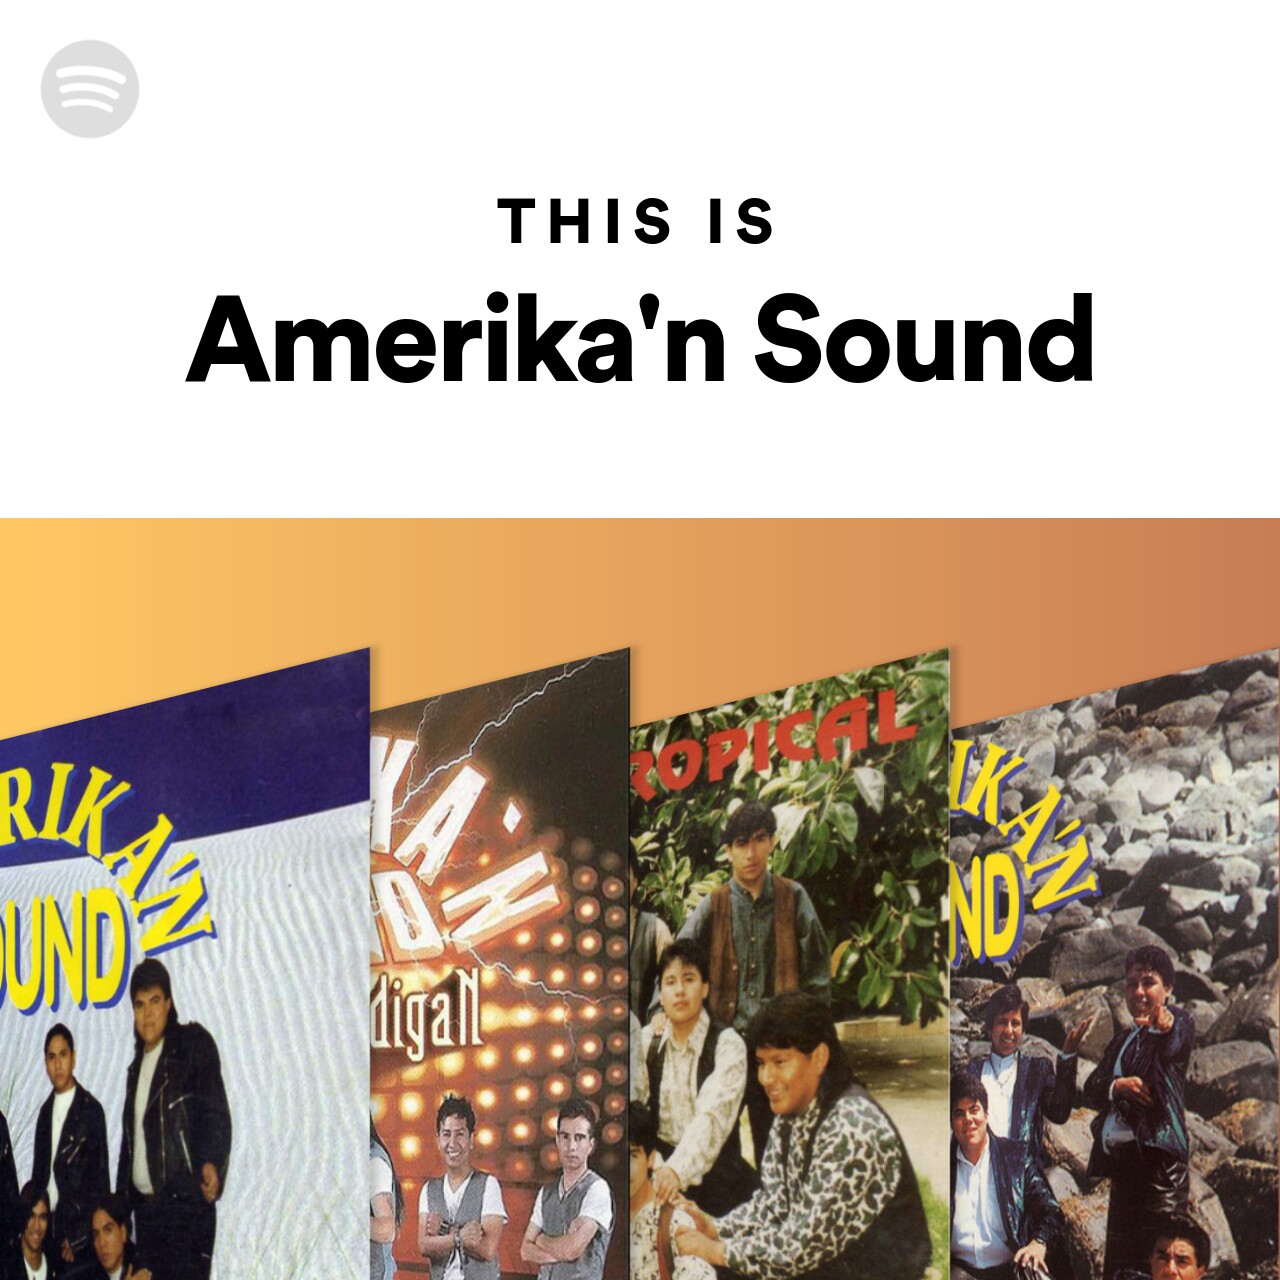 This Is Amerika'n Sound